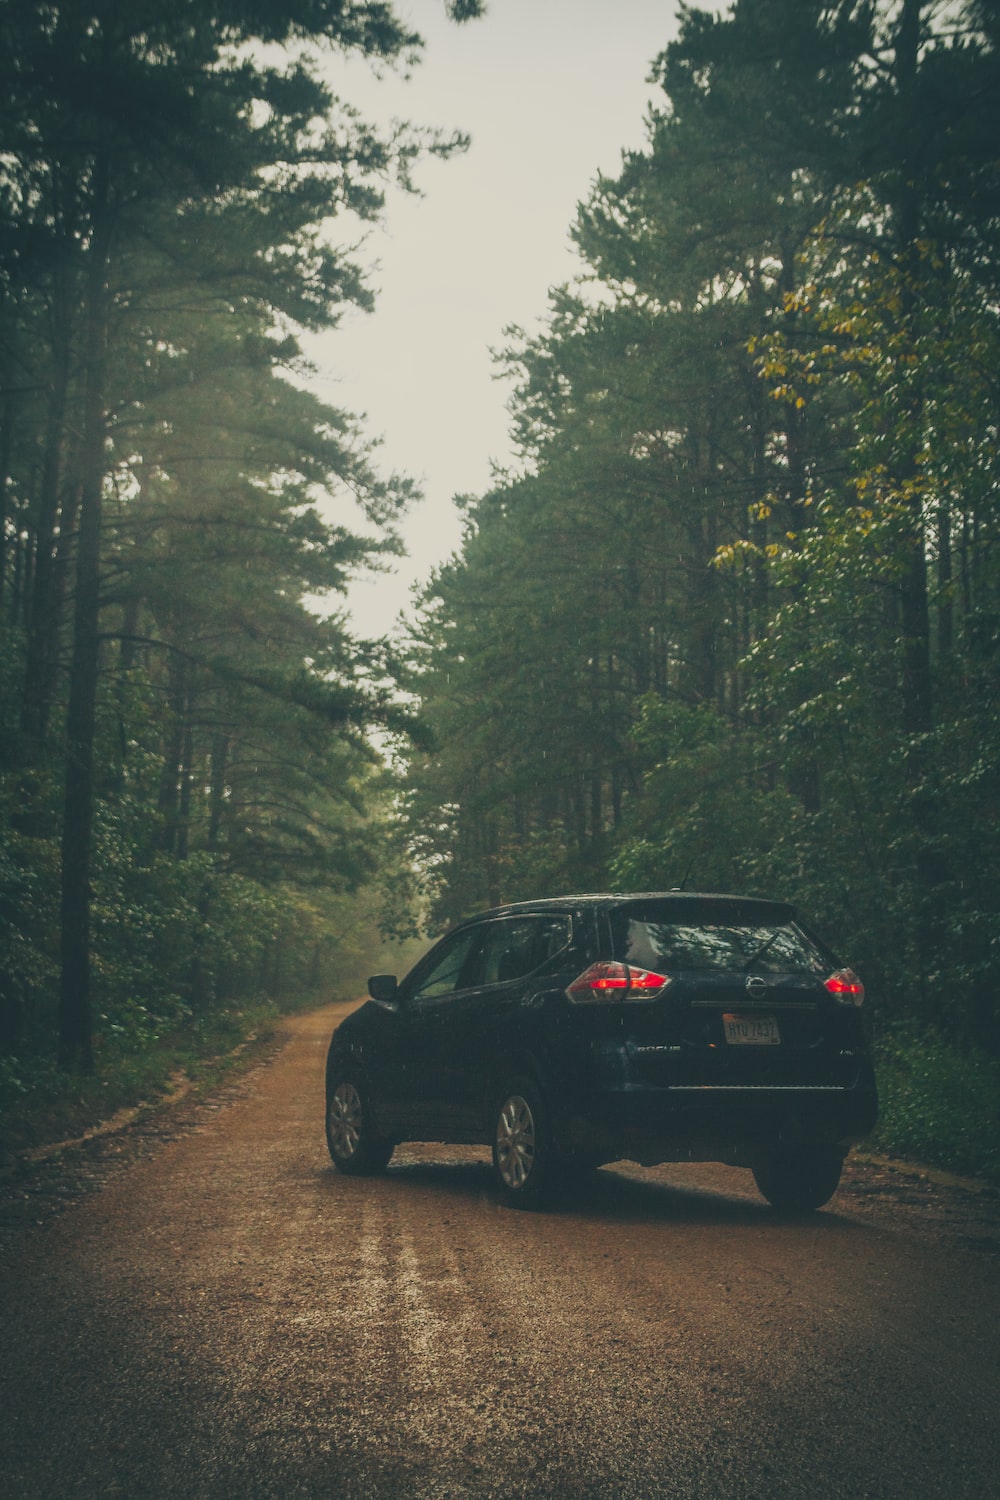 black sedan on road in between trees during daytime